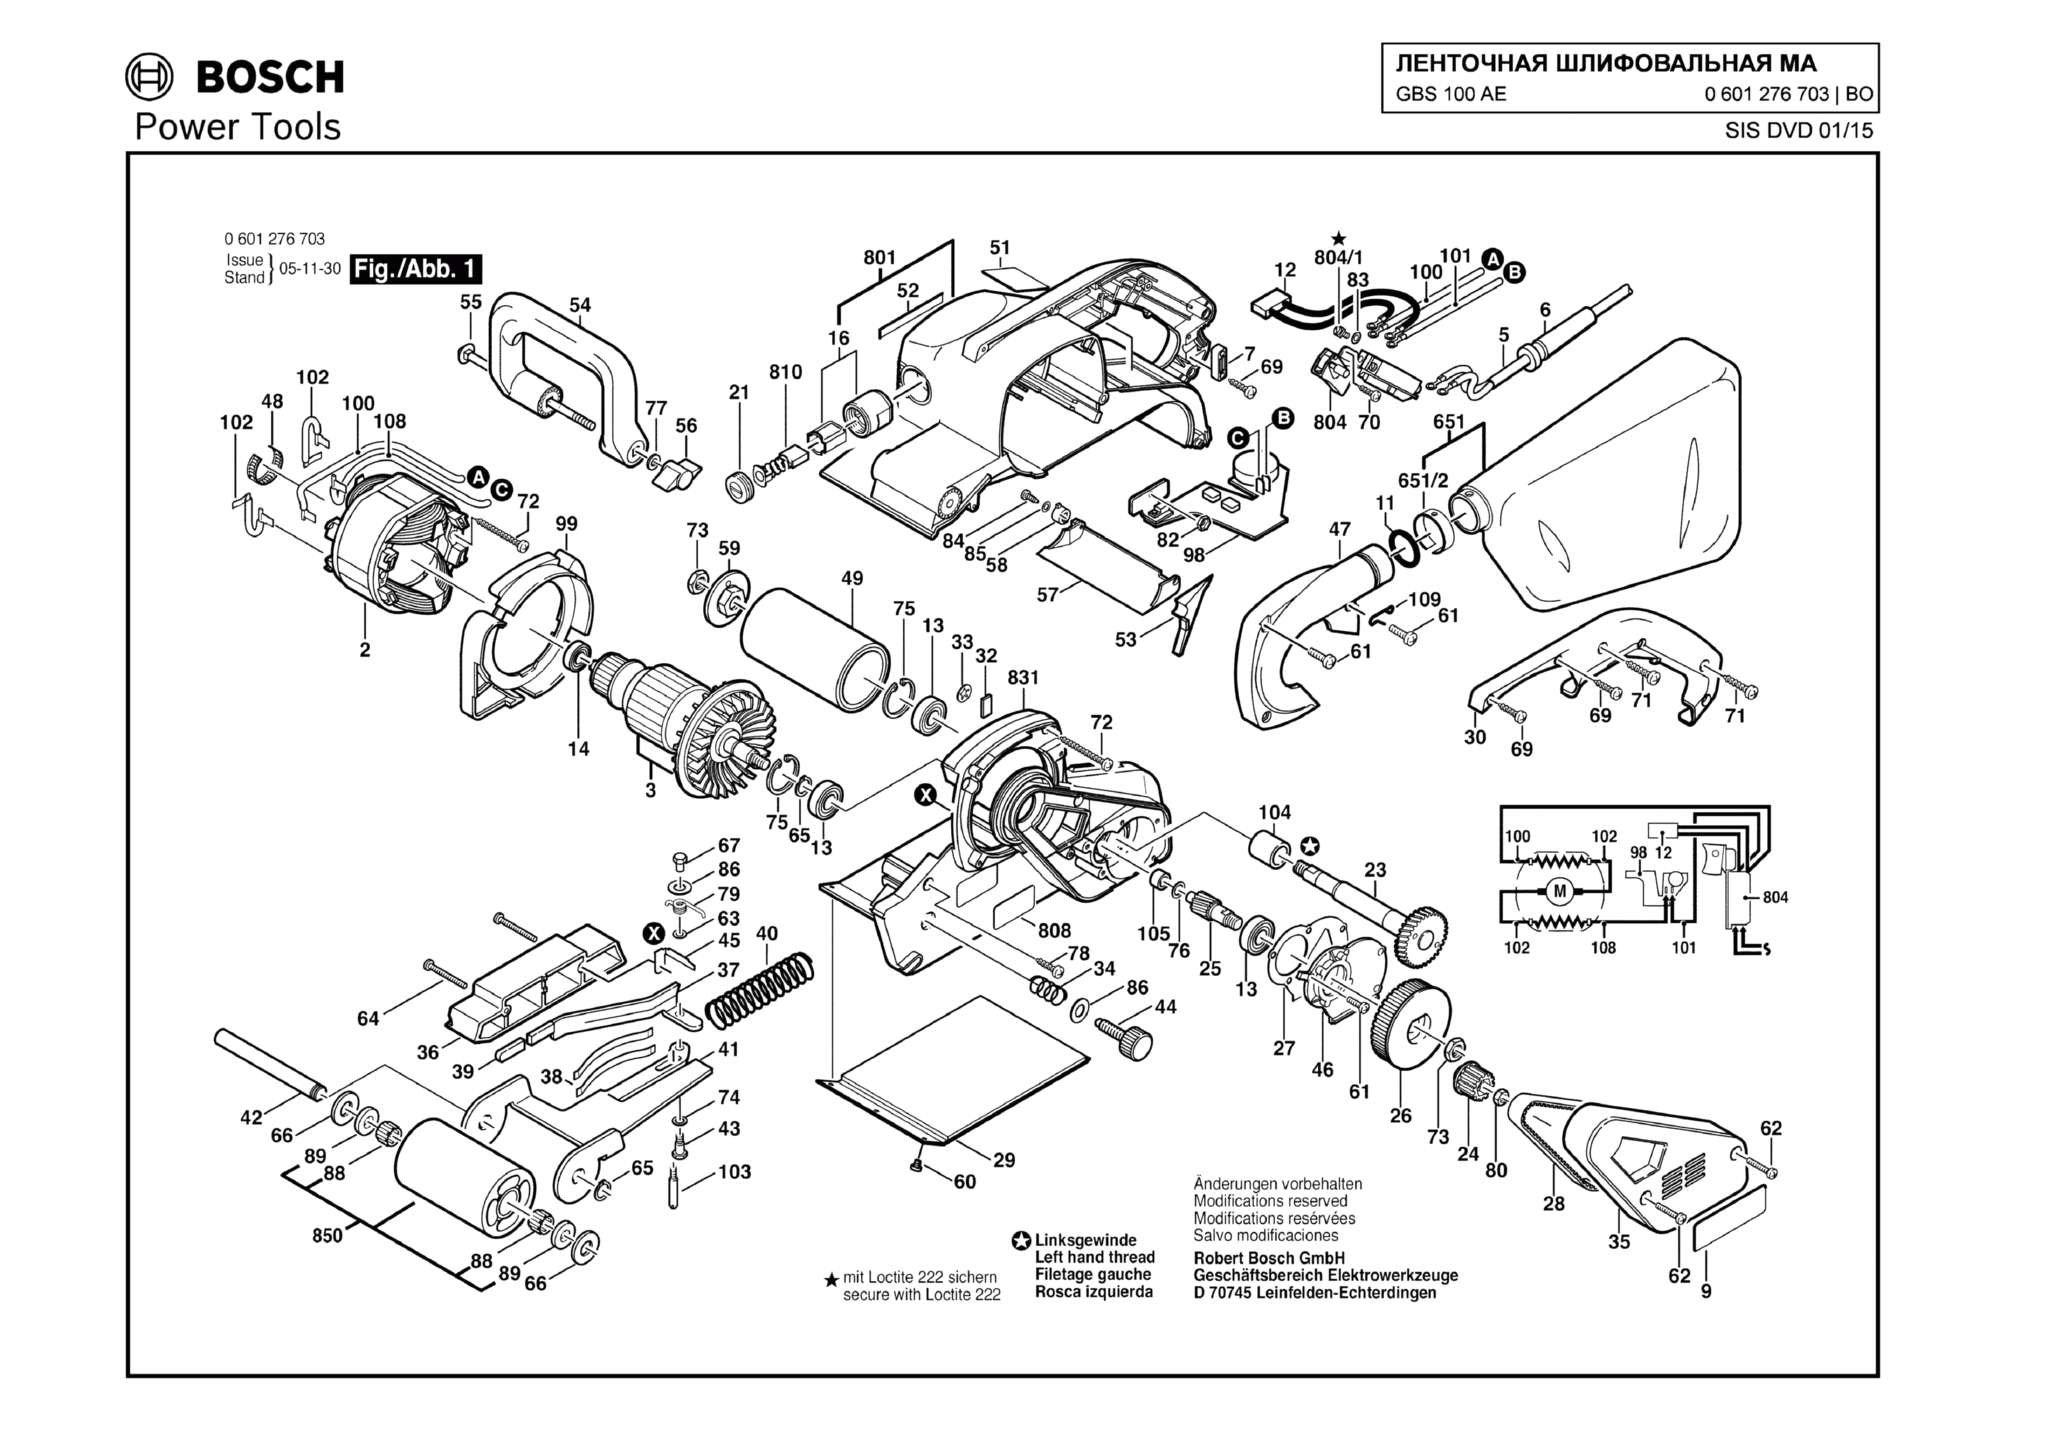 Запчасти, схема и деталировка Bosch GBS 100 AE (ТИП 0601276703)